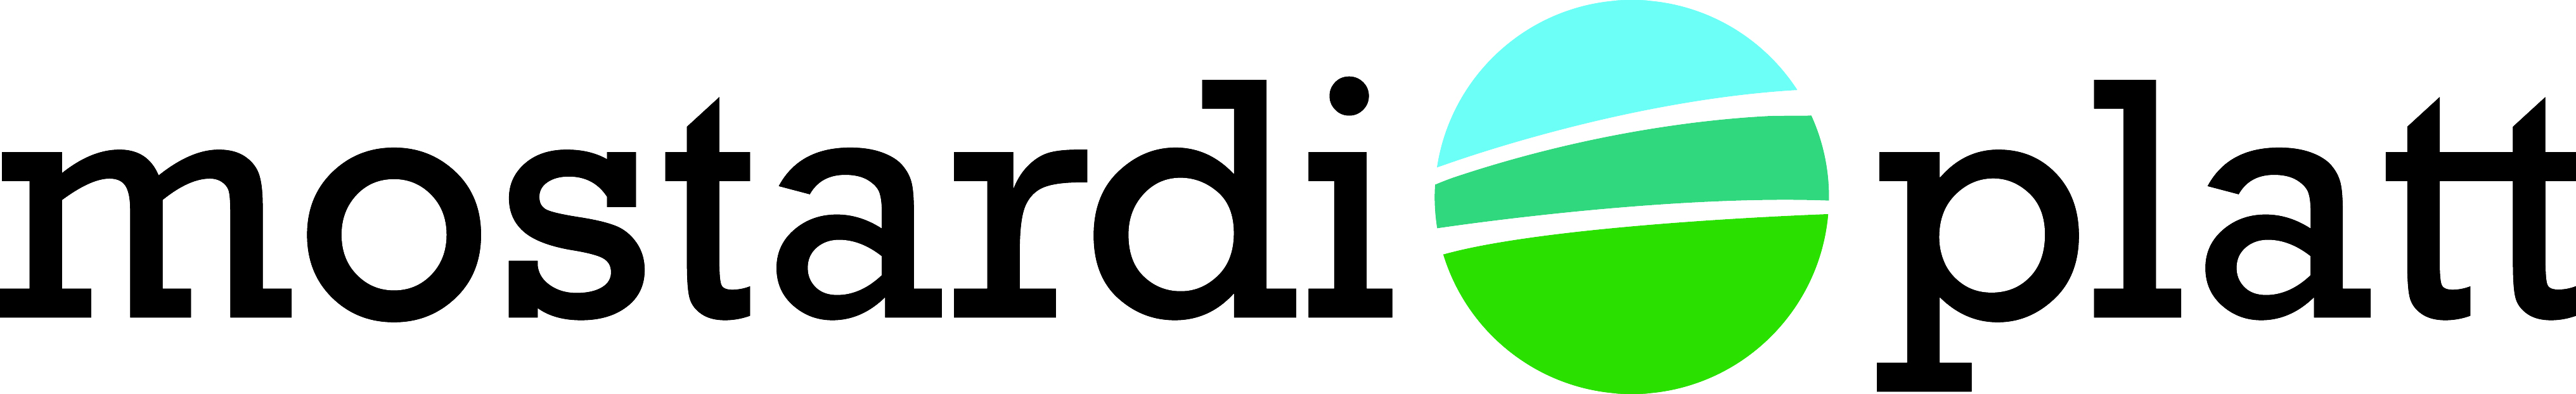 Mostardi Platt Logo.jpg